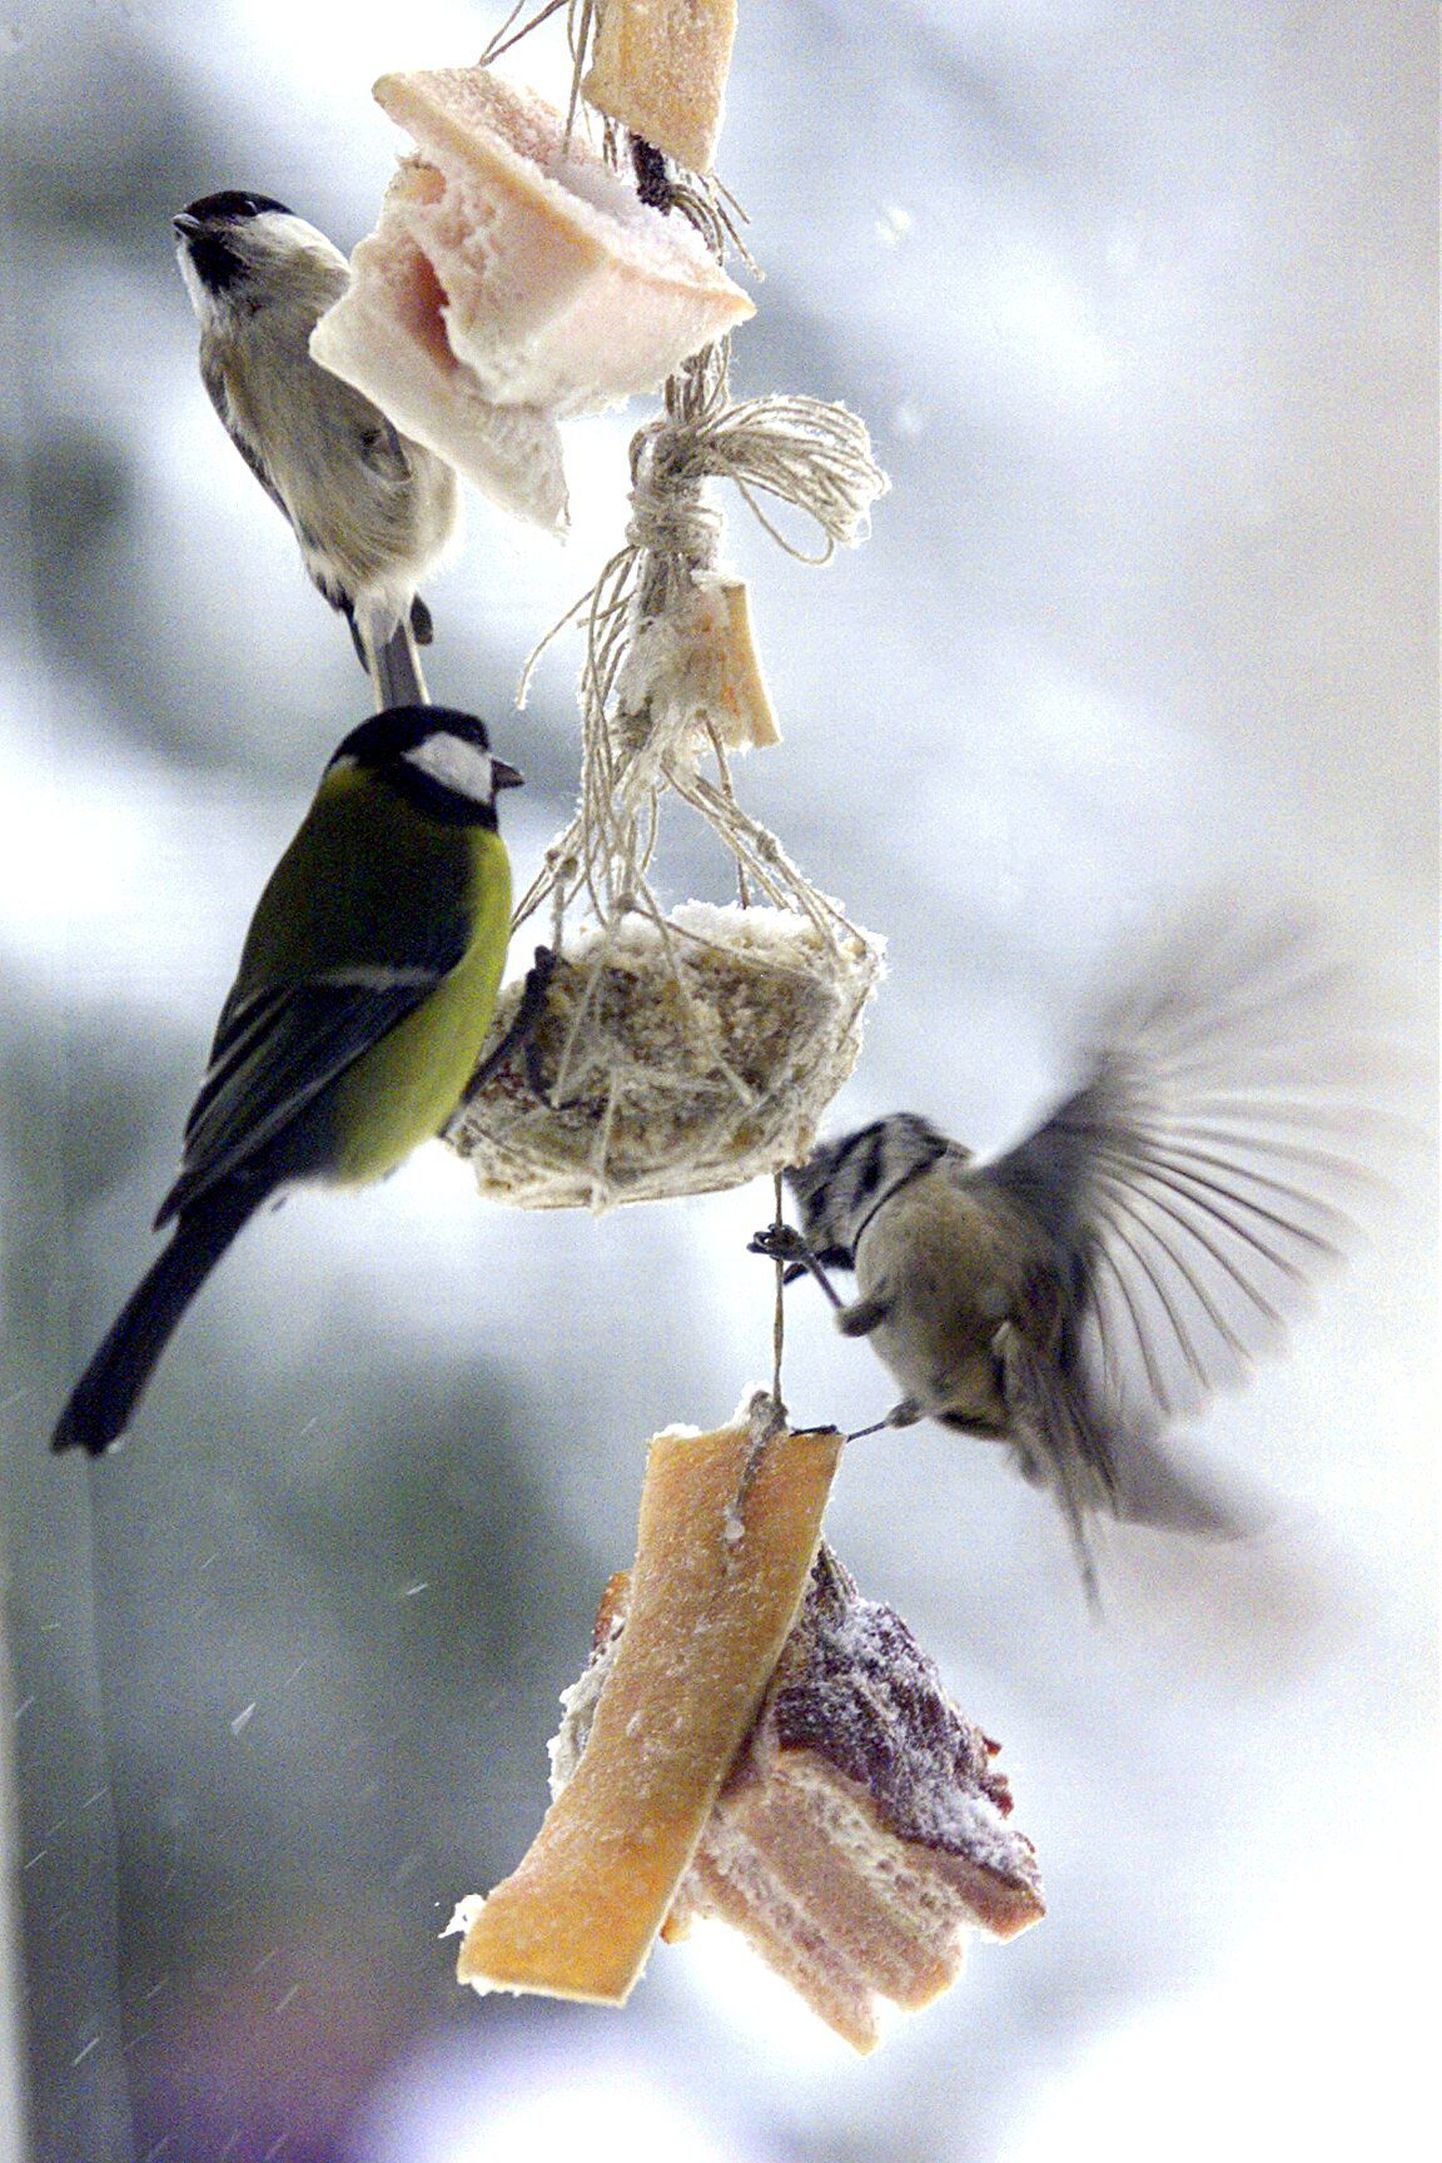 Pekitükid nööri otsas - üks harjumuspärasemaid lindude toitmise viise.